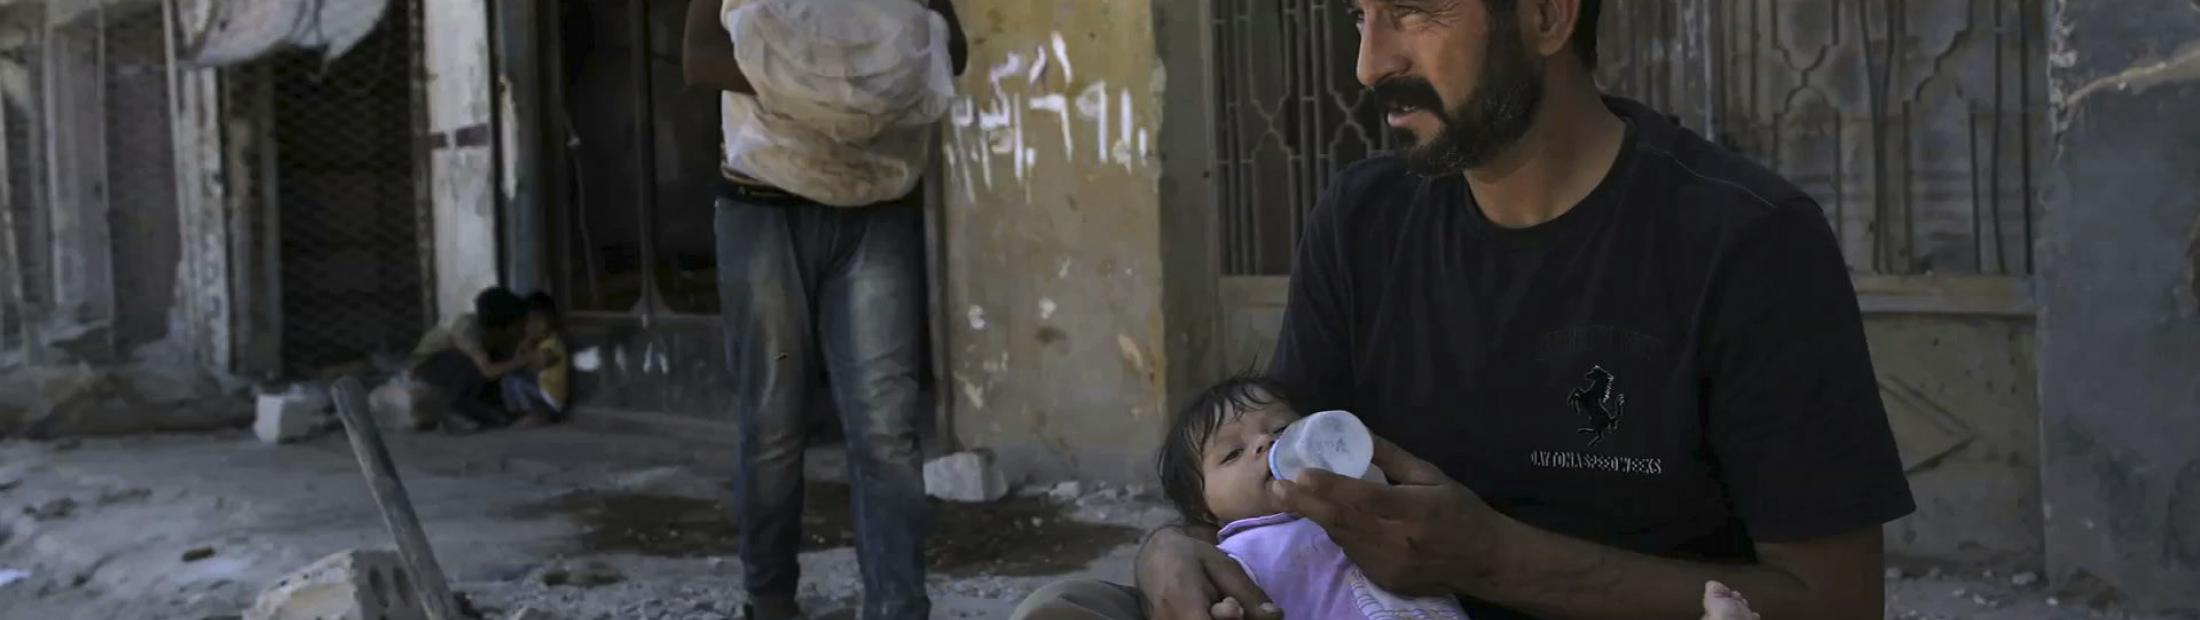 Las duras condiciones de vida en Homs y en otras ciudades sirias